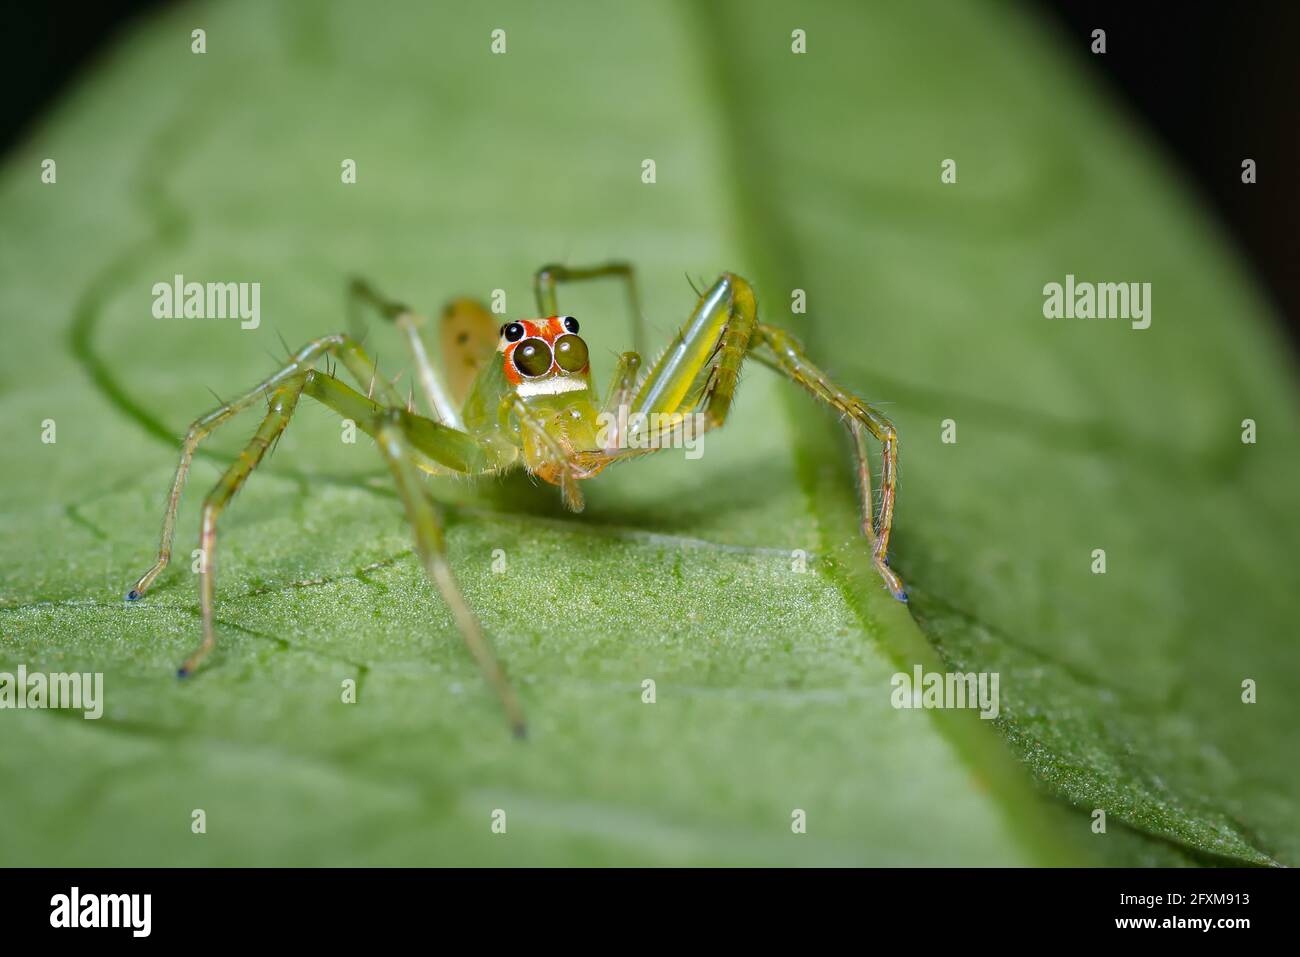 Araignée sauteuse verte camoufée avec une feuille Photo Stock - Alamy